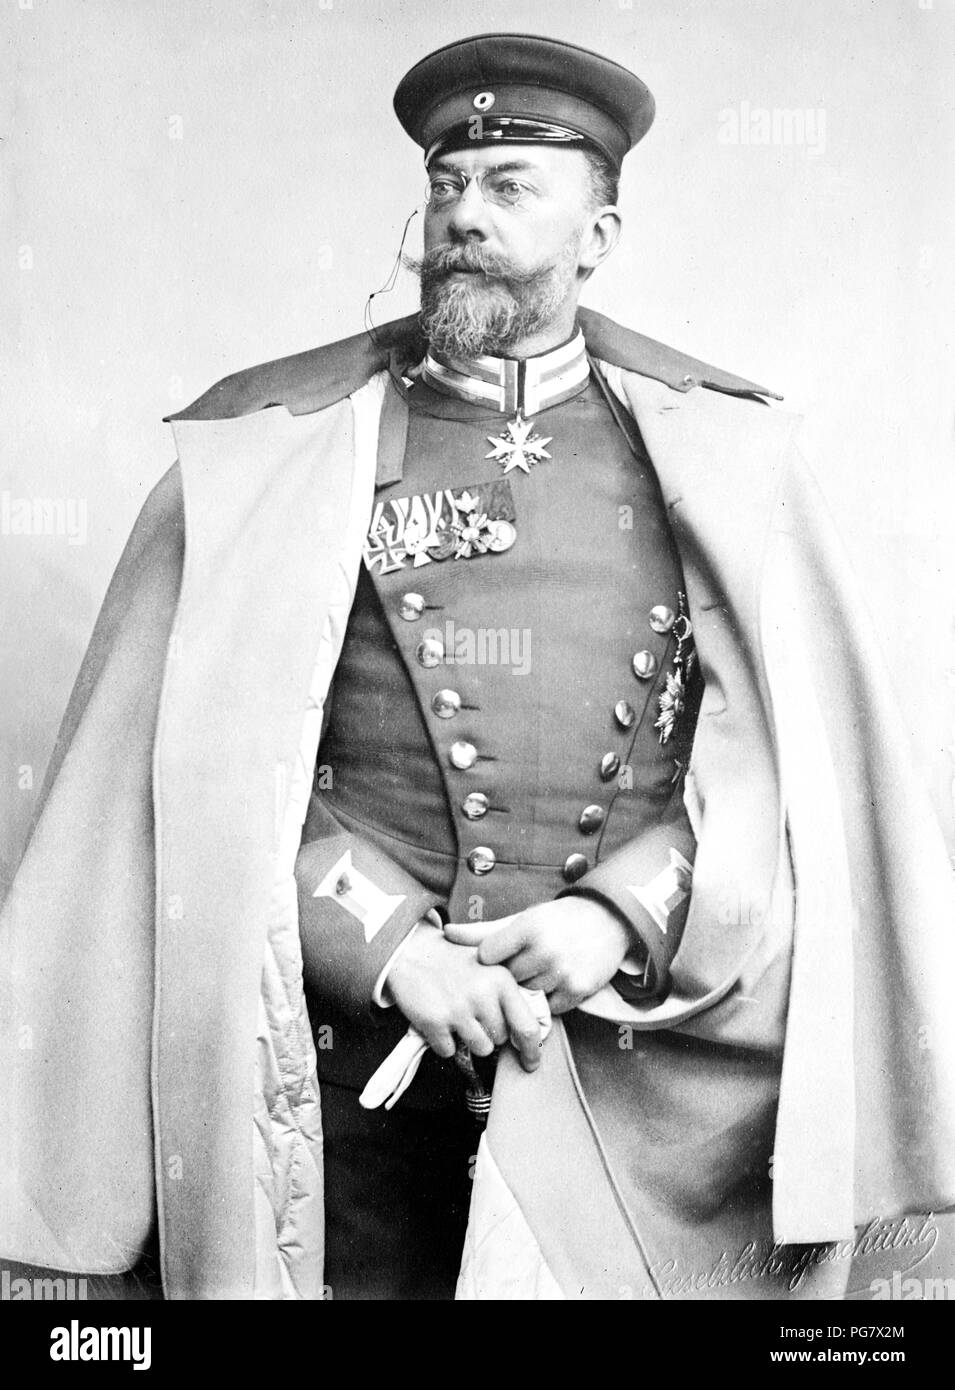 Prince Hohenlohe Oehringen, Freiherr Alex. Von Gabelstein, standing, in uniform, Gestulich geschurt. ca 1905 Stock Photo